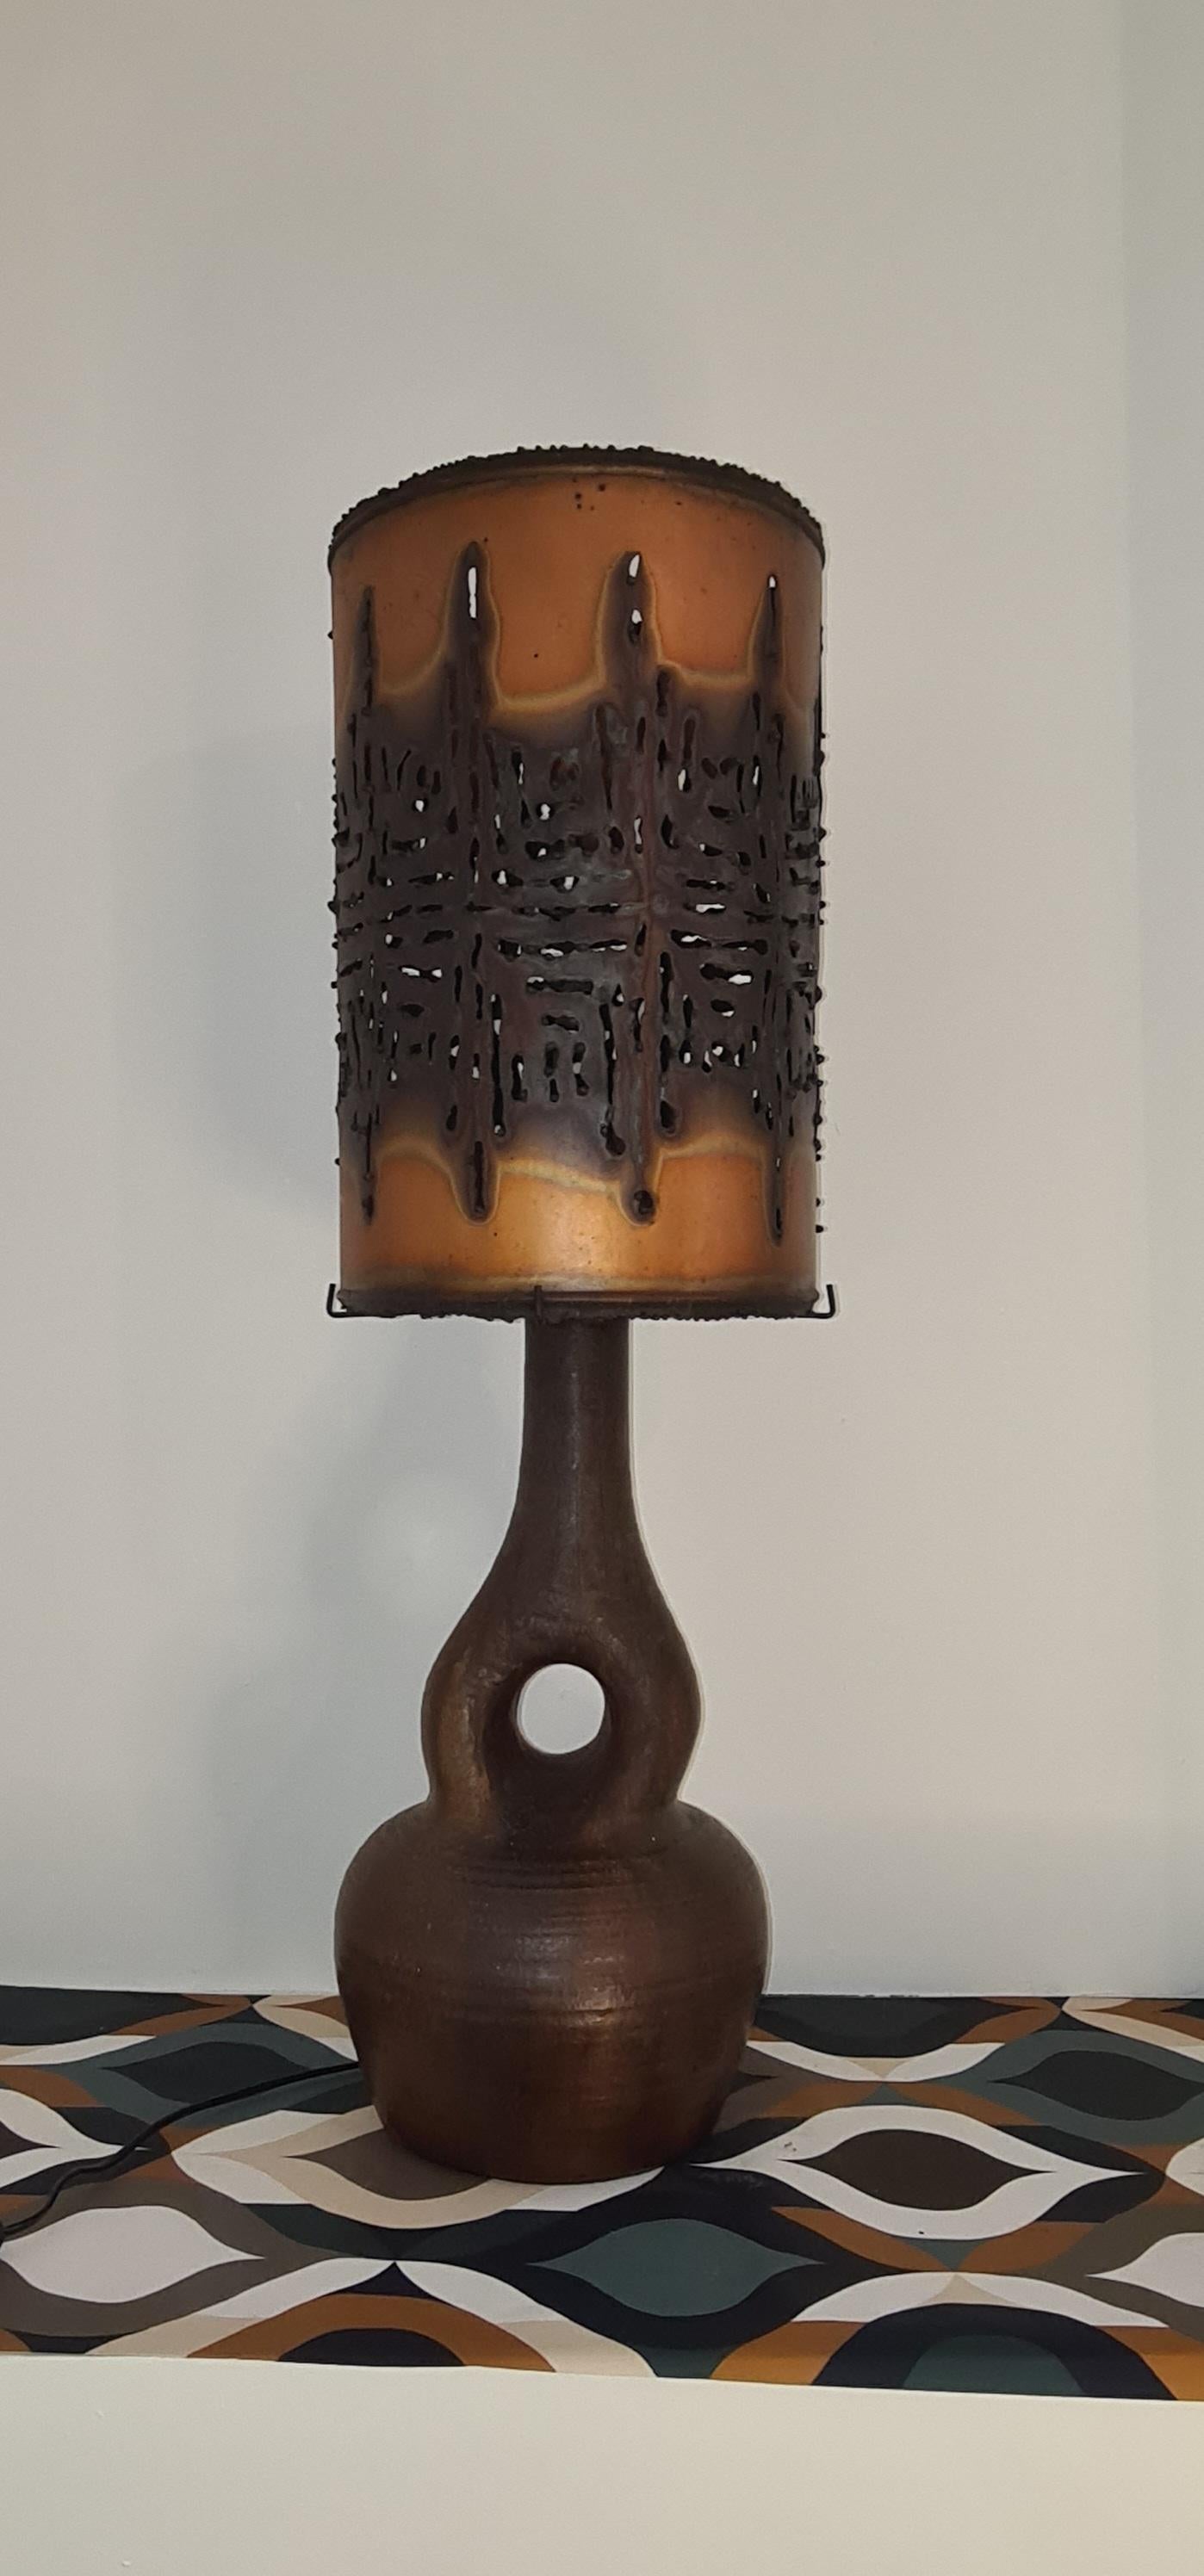 magnifique lampe en céramique Accolay, toute l'originalité de la lampe réside dans l'imposant abat-jour en cuivre perforé qui diffuse une lumière douce.
L'abat-jour repose sur un socle composé de 4 tiges de fer, l'une de ces tiges est légèrement